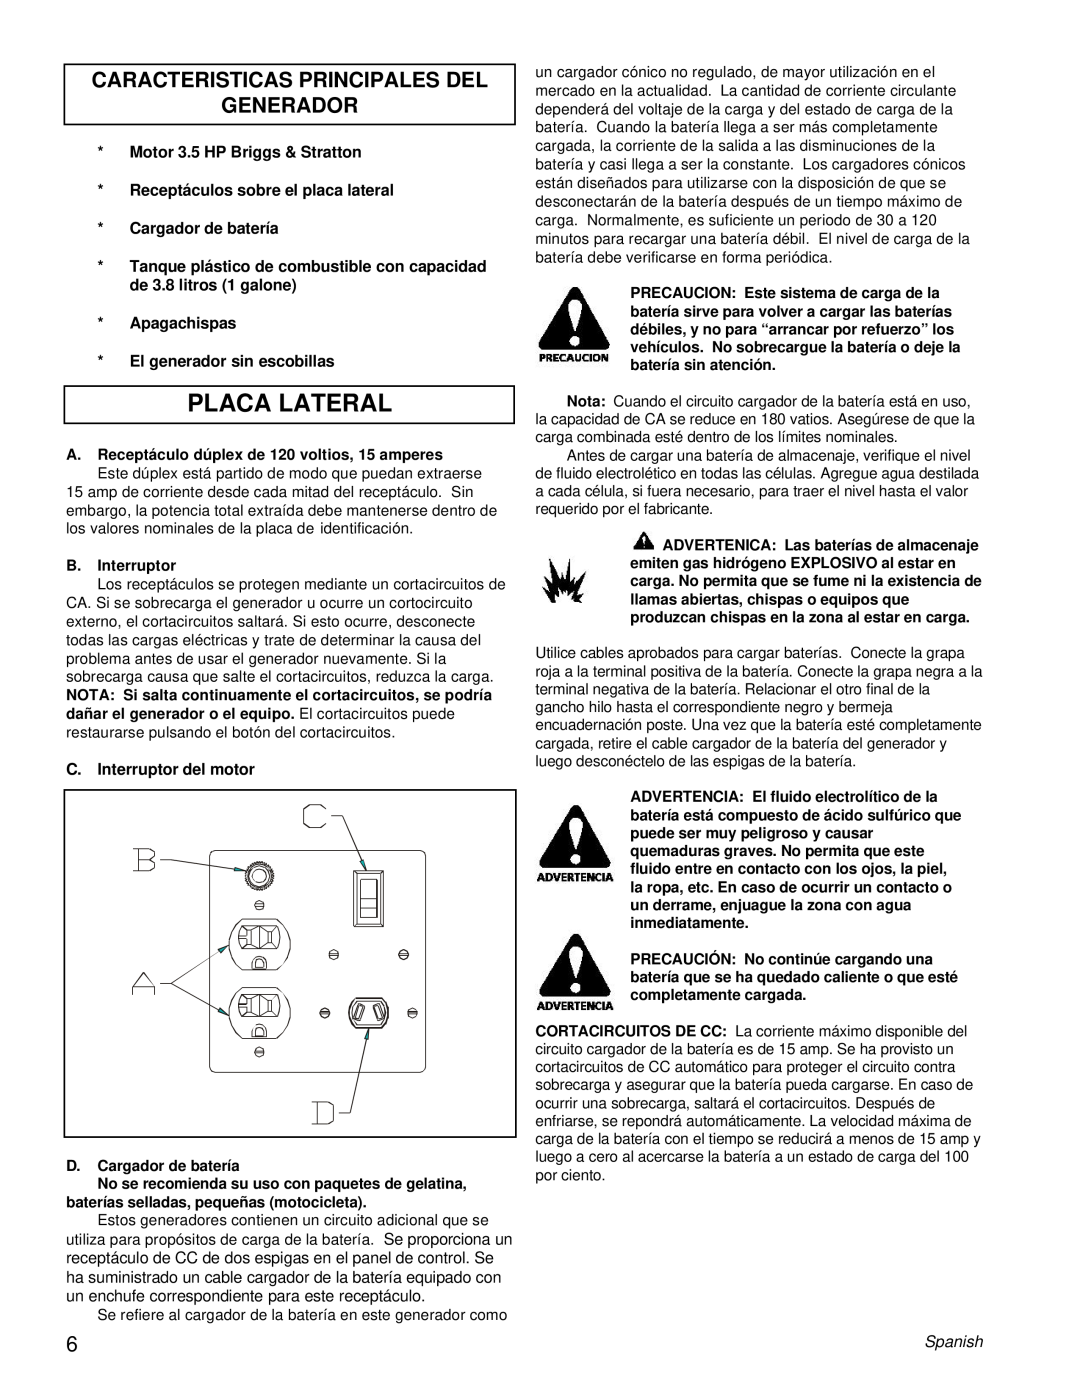 Powermate PC0401855 manual Placa Lateral, Caracteristicas Principales Del Generador 